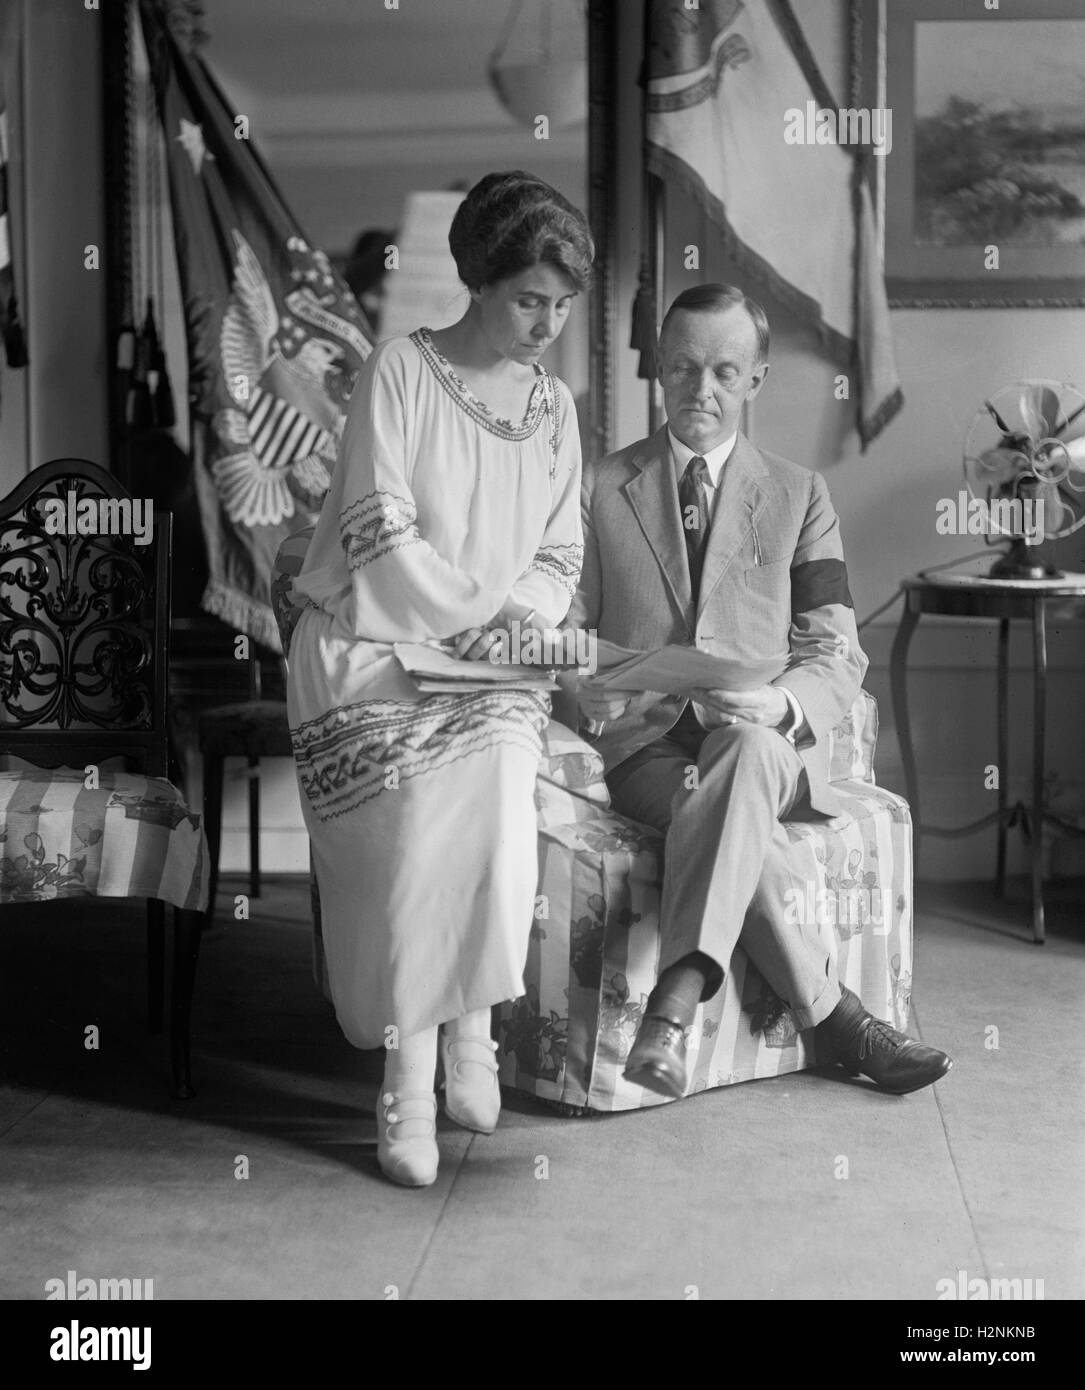 Nouveau président américain Calvin Coolidge et la Première Dame Grace Coolidge après la mort du Président Warren G. Harding, Washington DC, USA, National Photo Company, le 5 août 1923 Banque D'Images